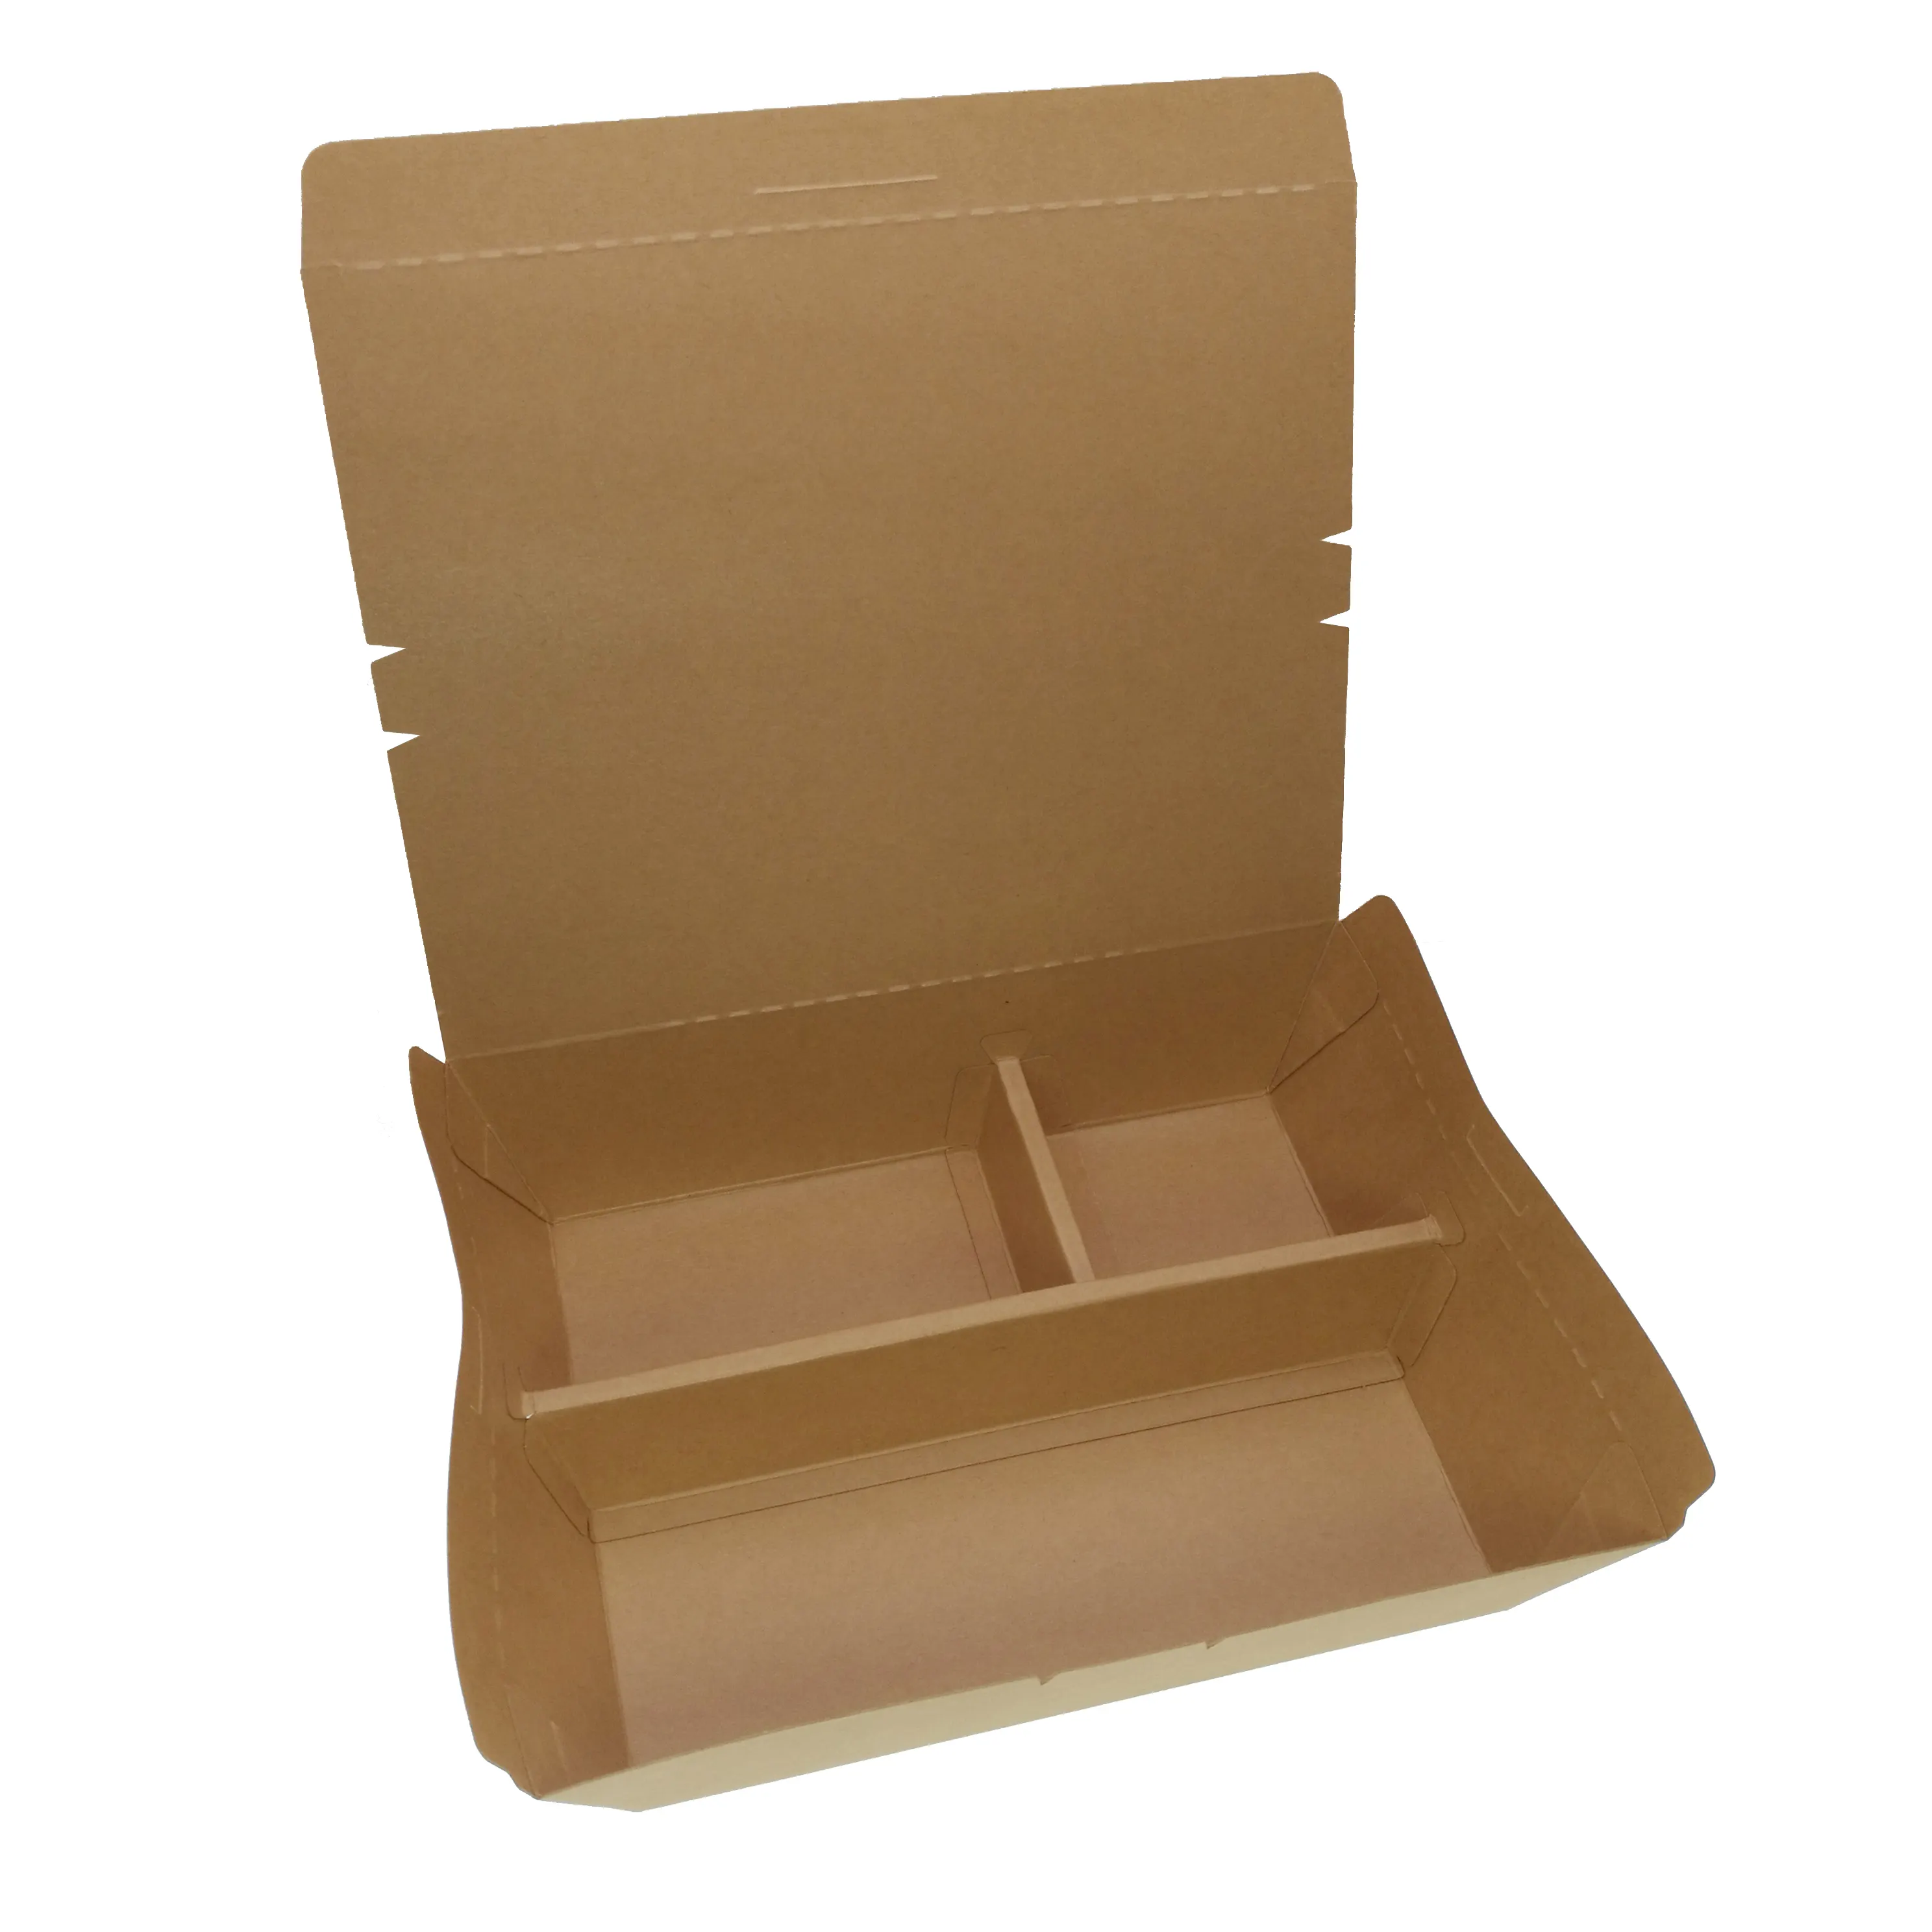 Grande formato 200pcs/ctn design Creativo di pranzo usa e getta 3 sezioni le cellule di carta cartone eco-friendly di imballaggio fast food box